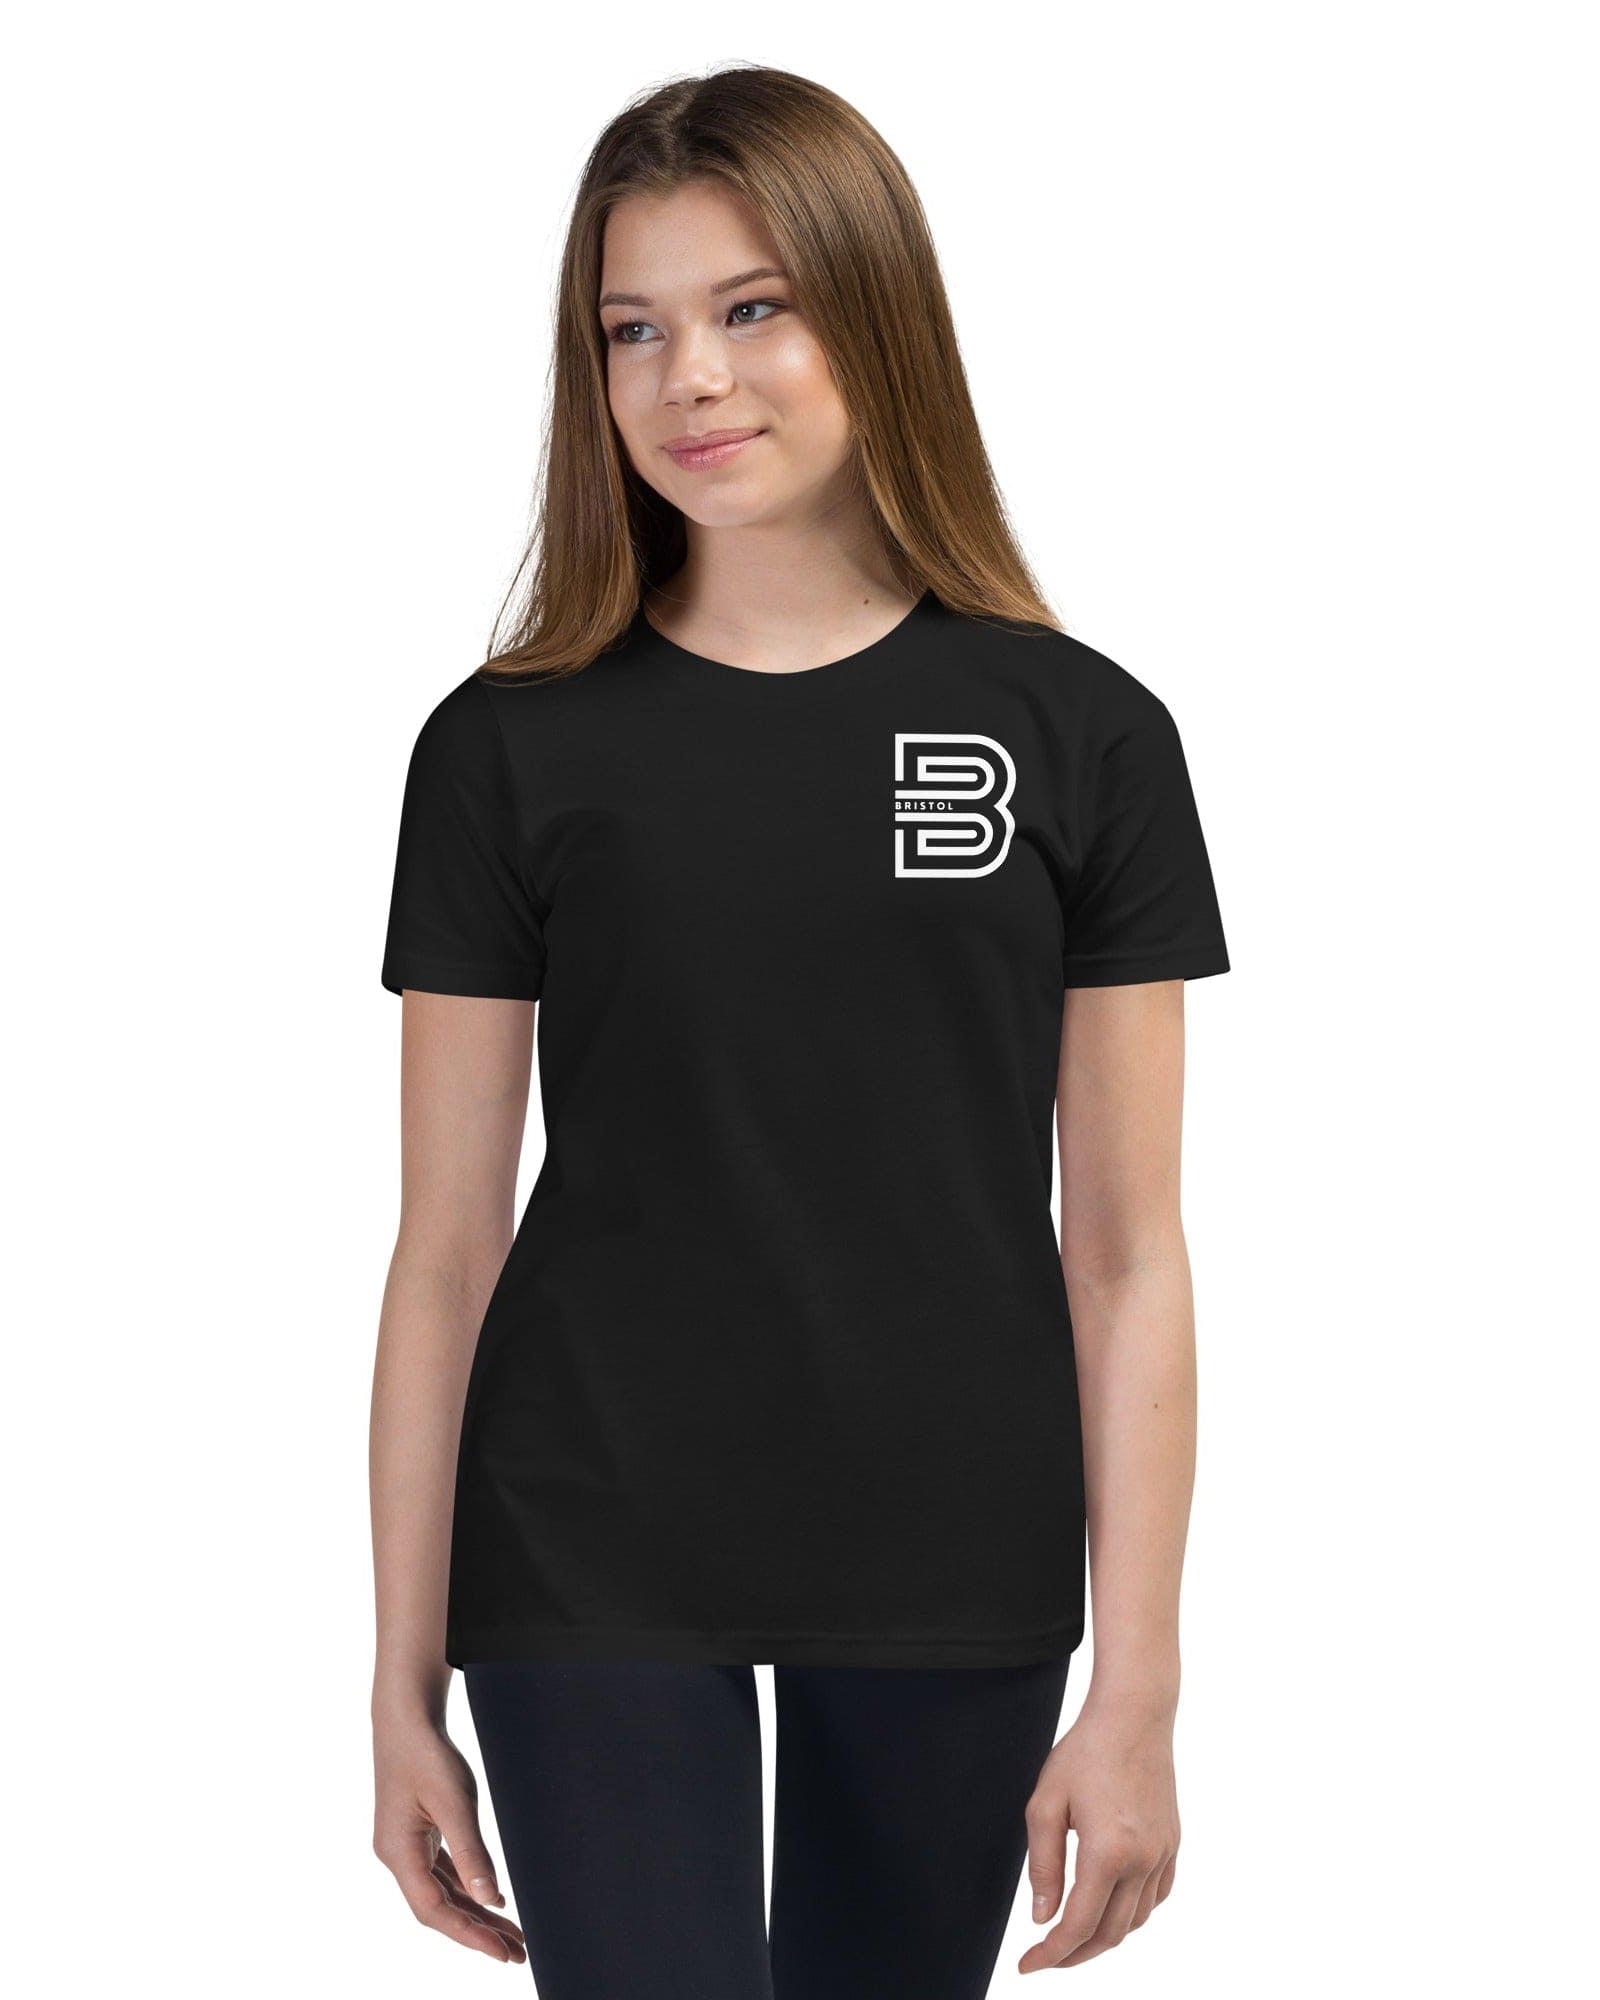 Bristol B Youth T-shirt Shirts & Tops Jolly & Goode